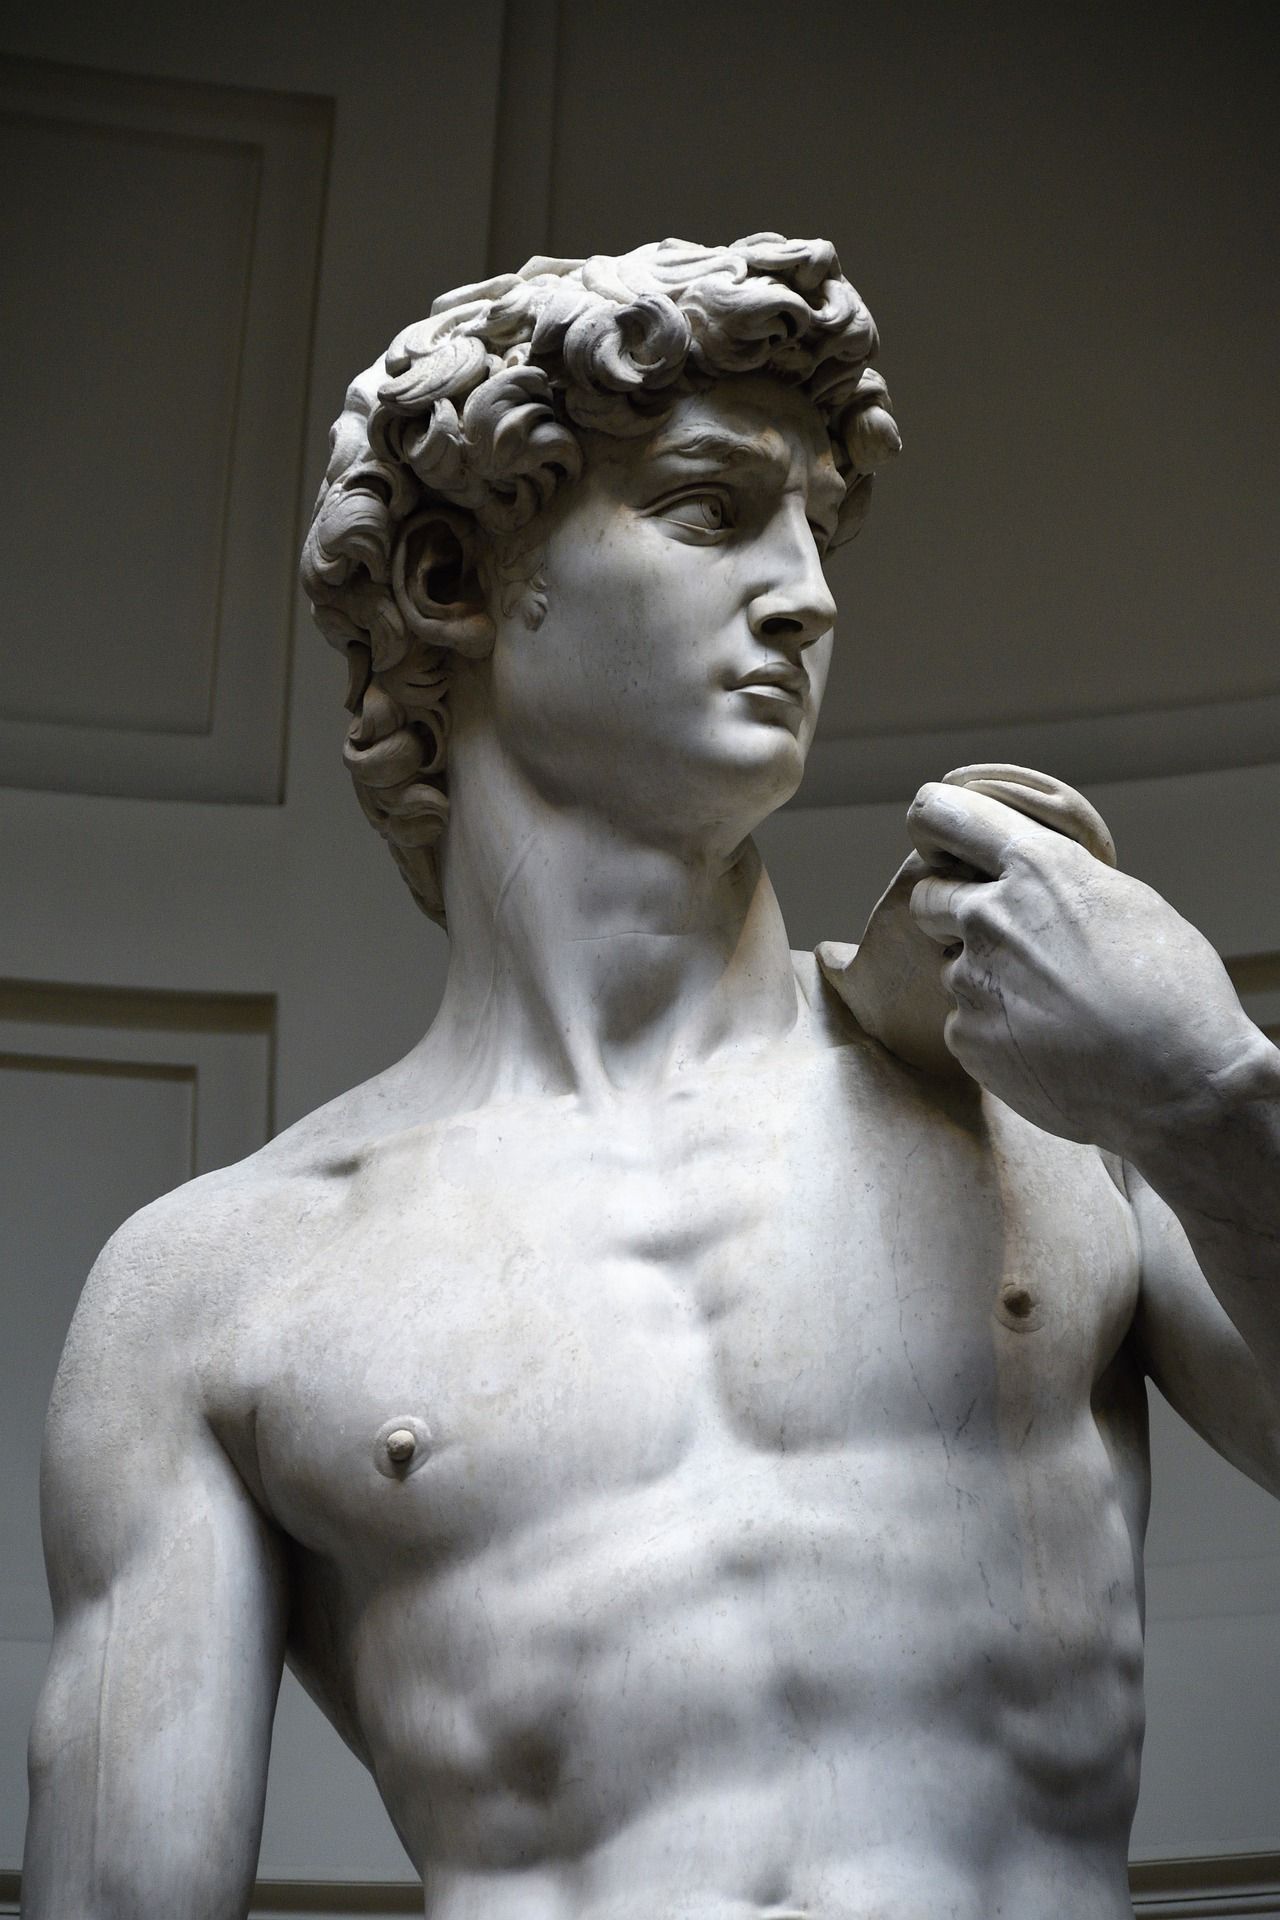 Ideas De Atlas Cargando El Mundo En Escultura Griega Esculturas